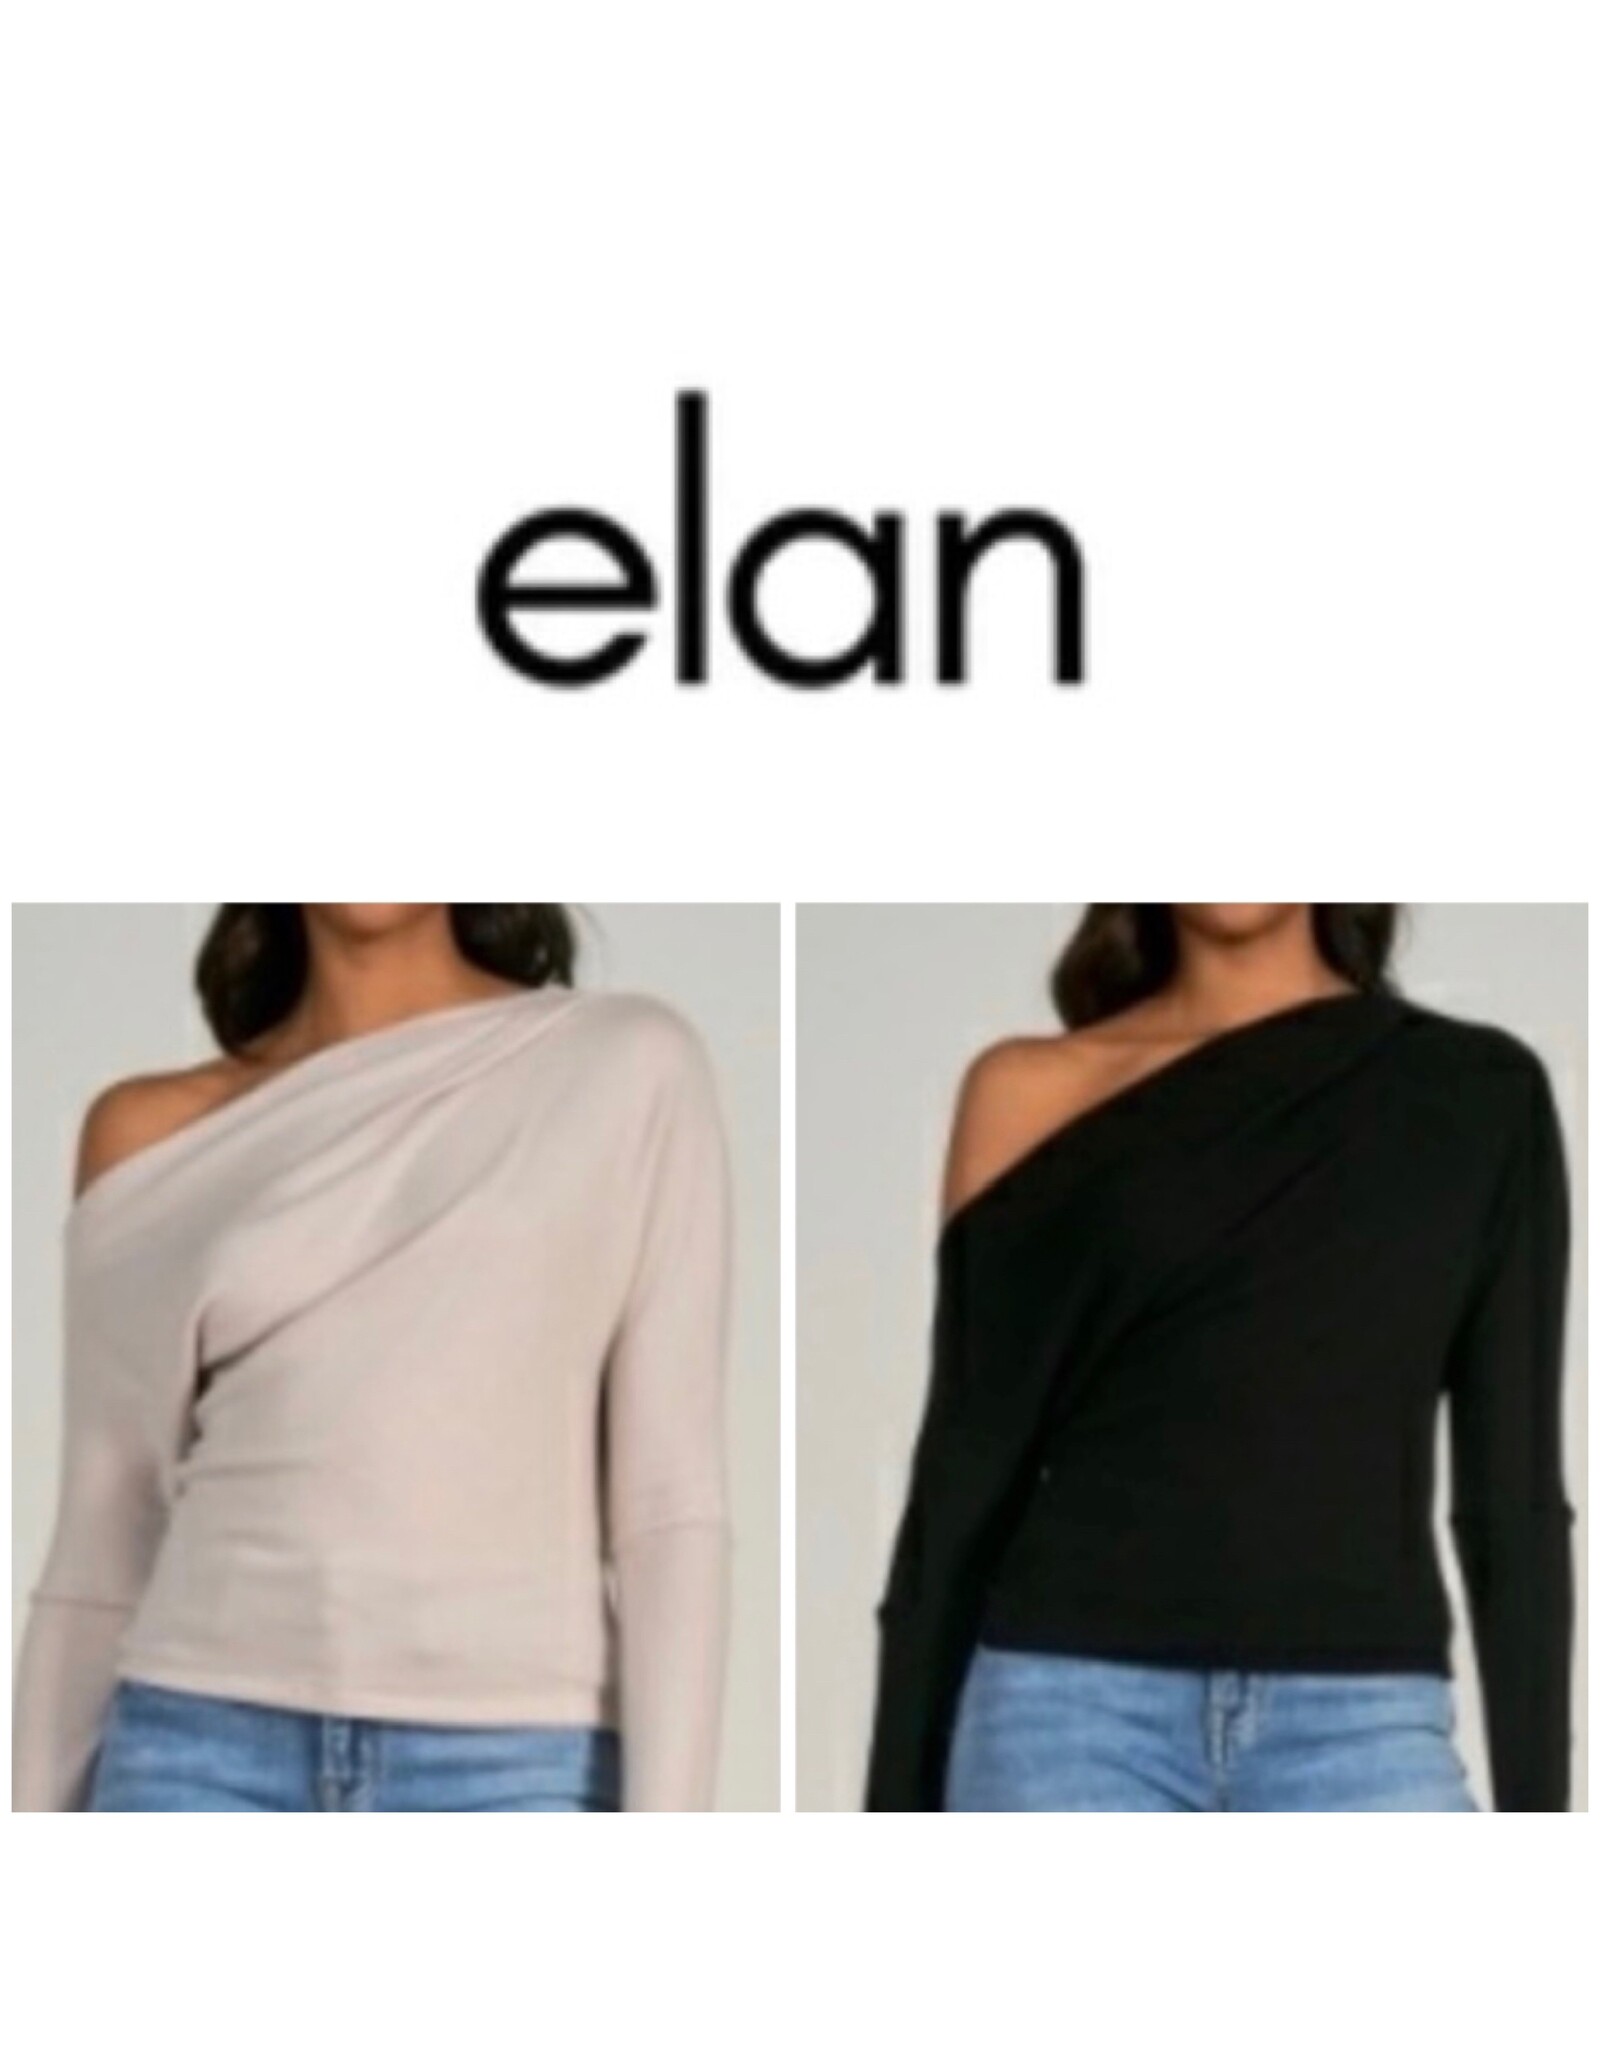 Elan Elan off shoulder top in stone or black